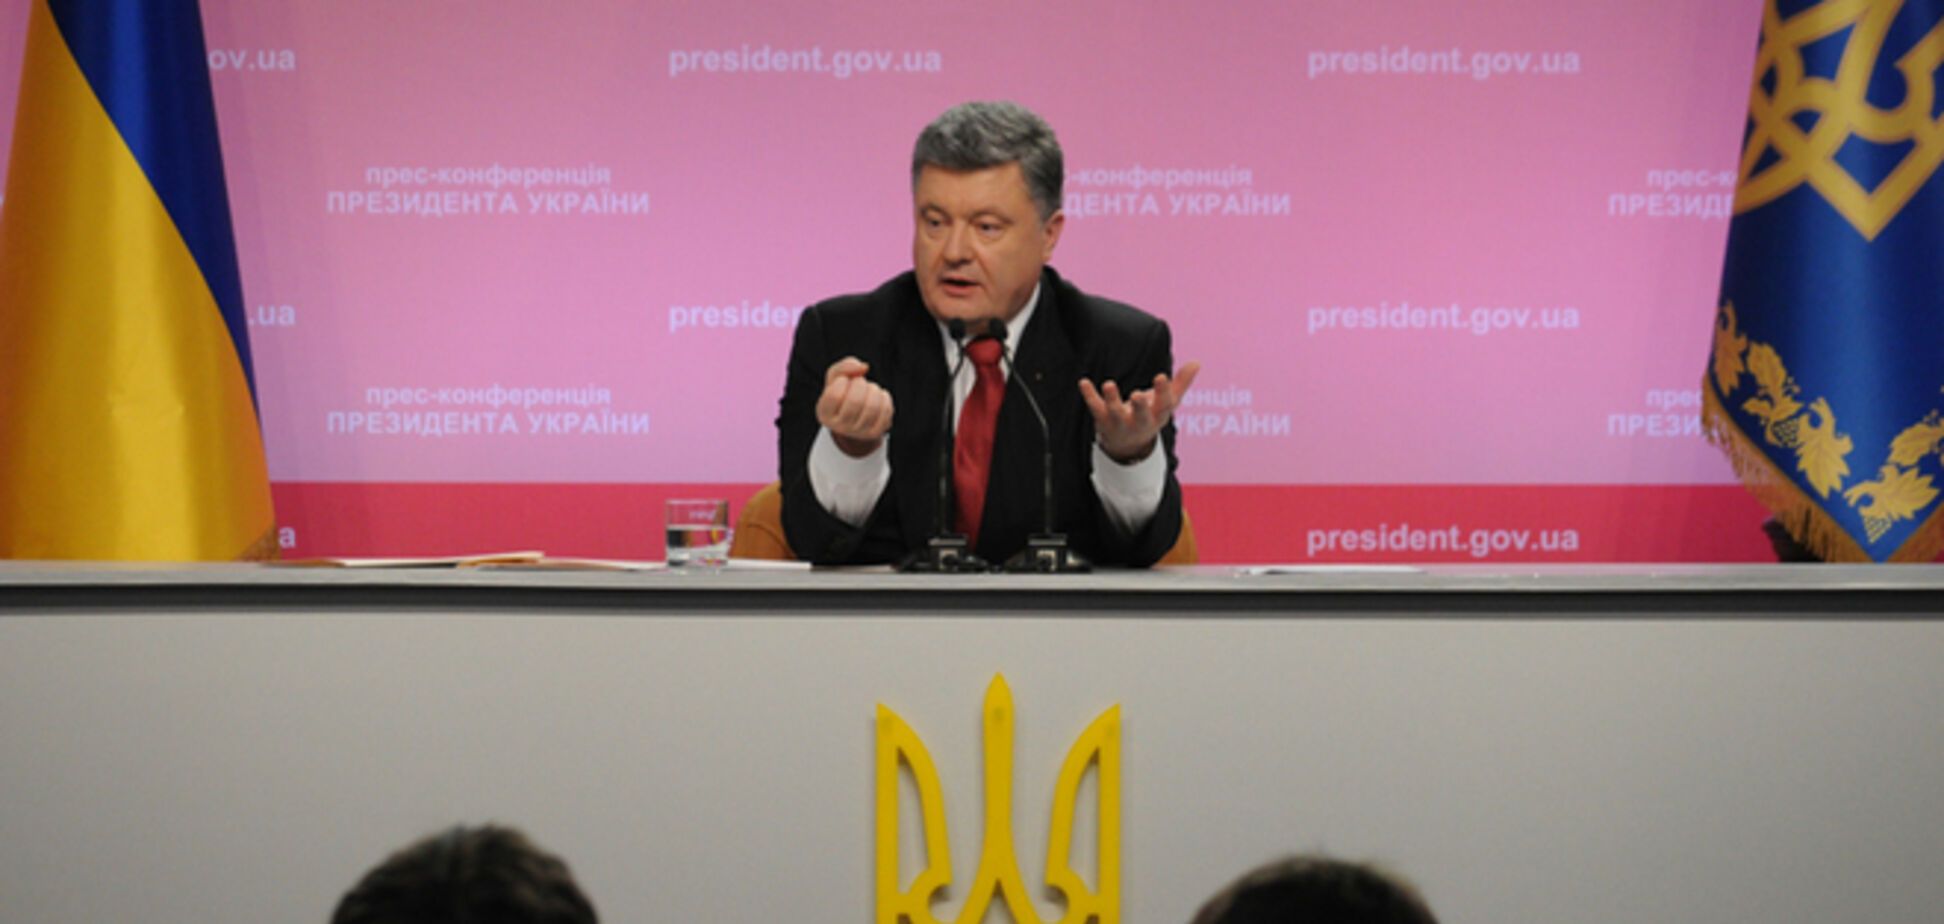 Без вопросов из России: как прошла пресс-конференция Порошенко